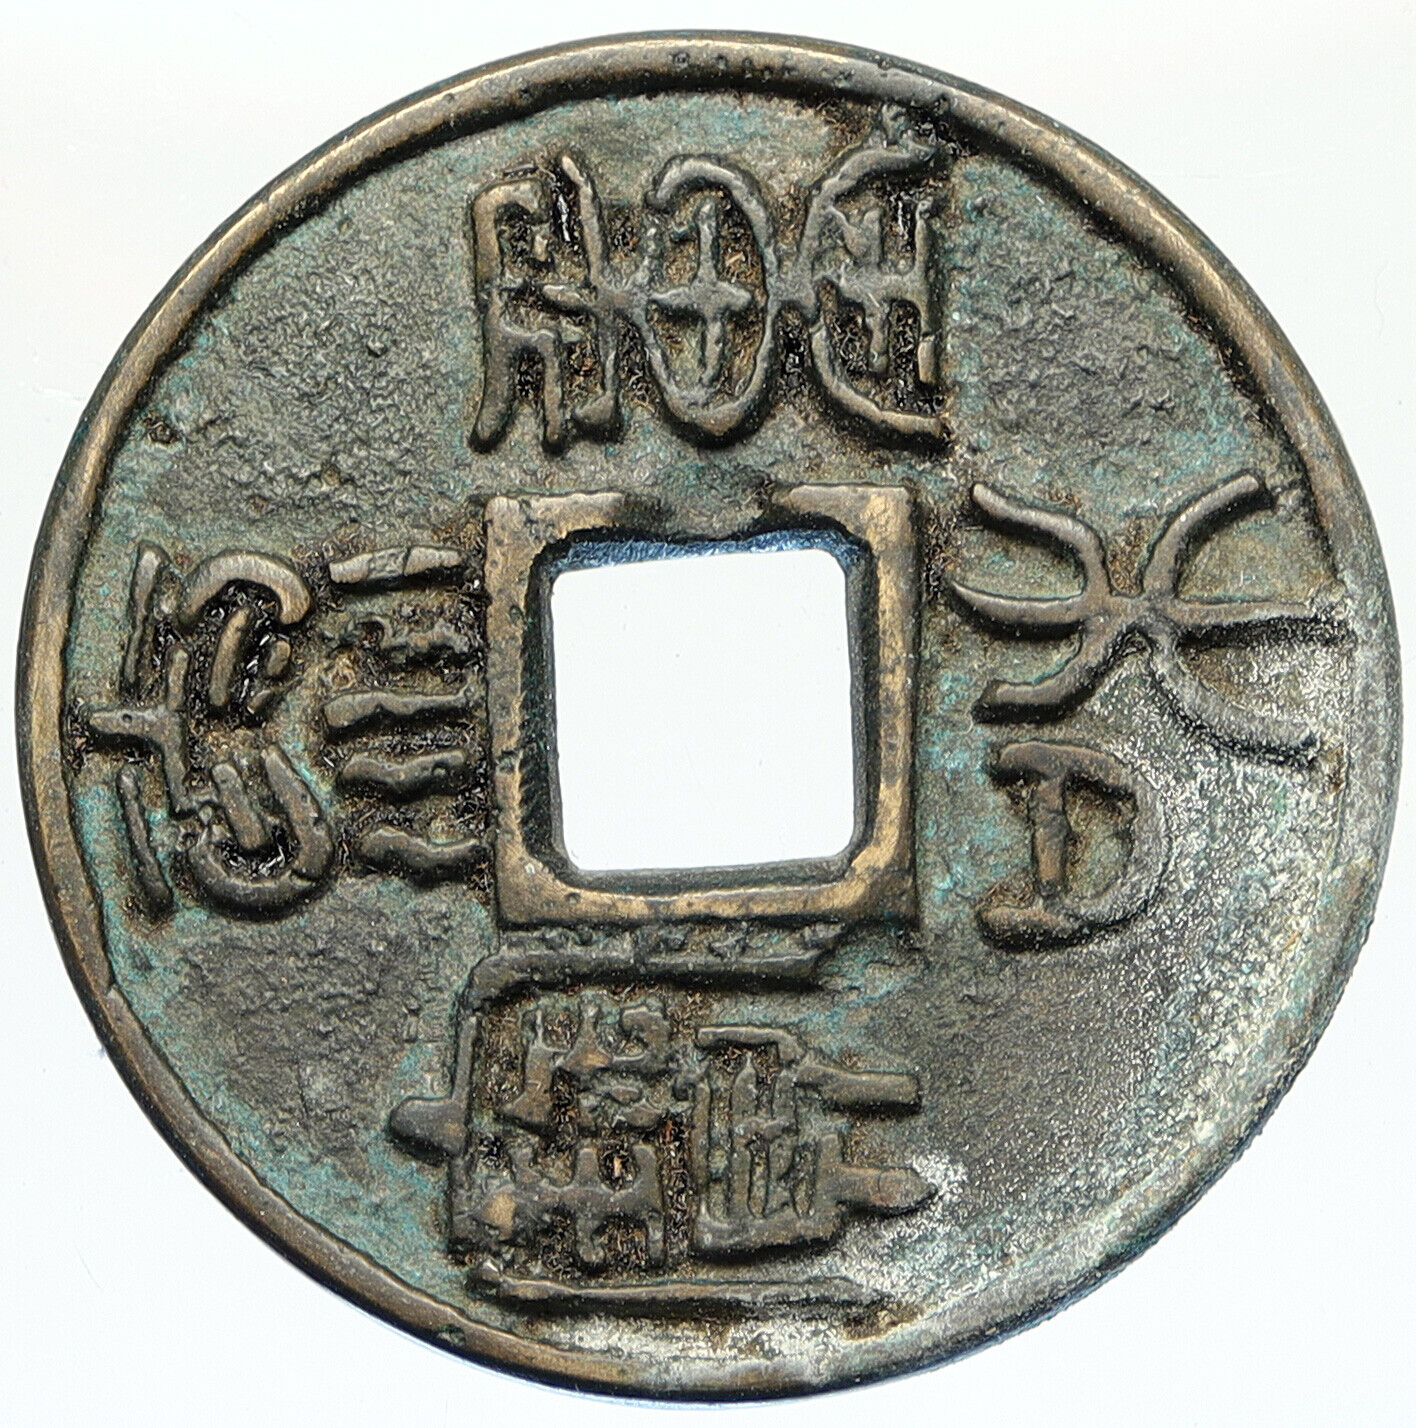 1204 AD CHINA Chin Dynasty CHANG TSUNG Ancient OLD Chinese 10 Cash Coin i112277